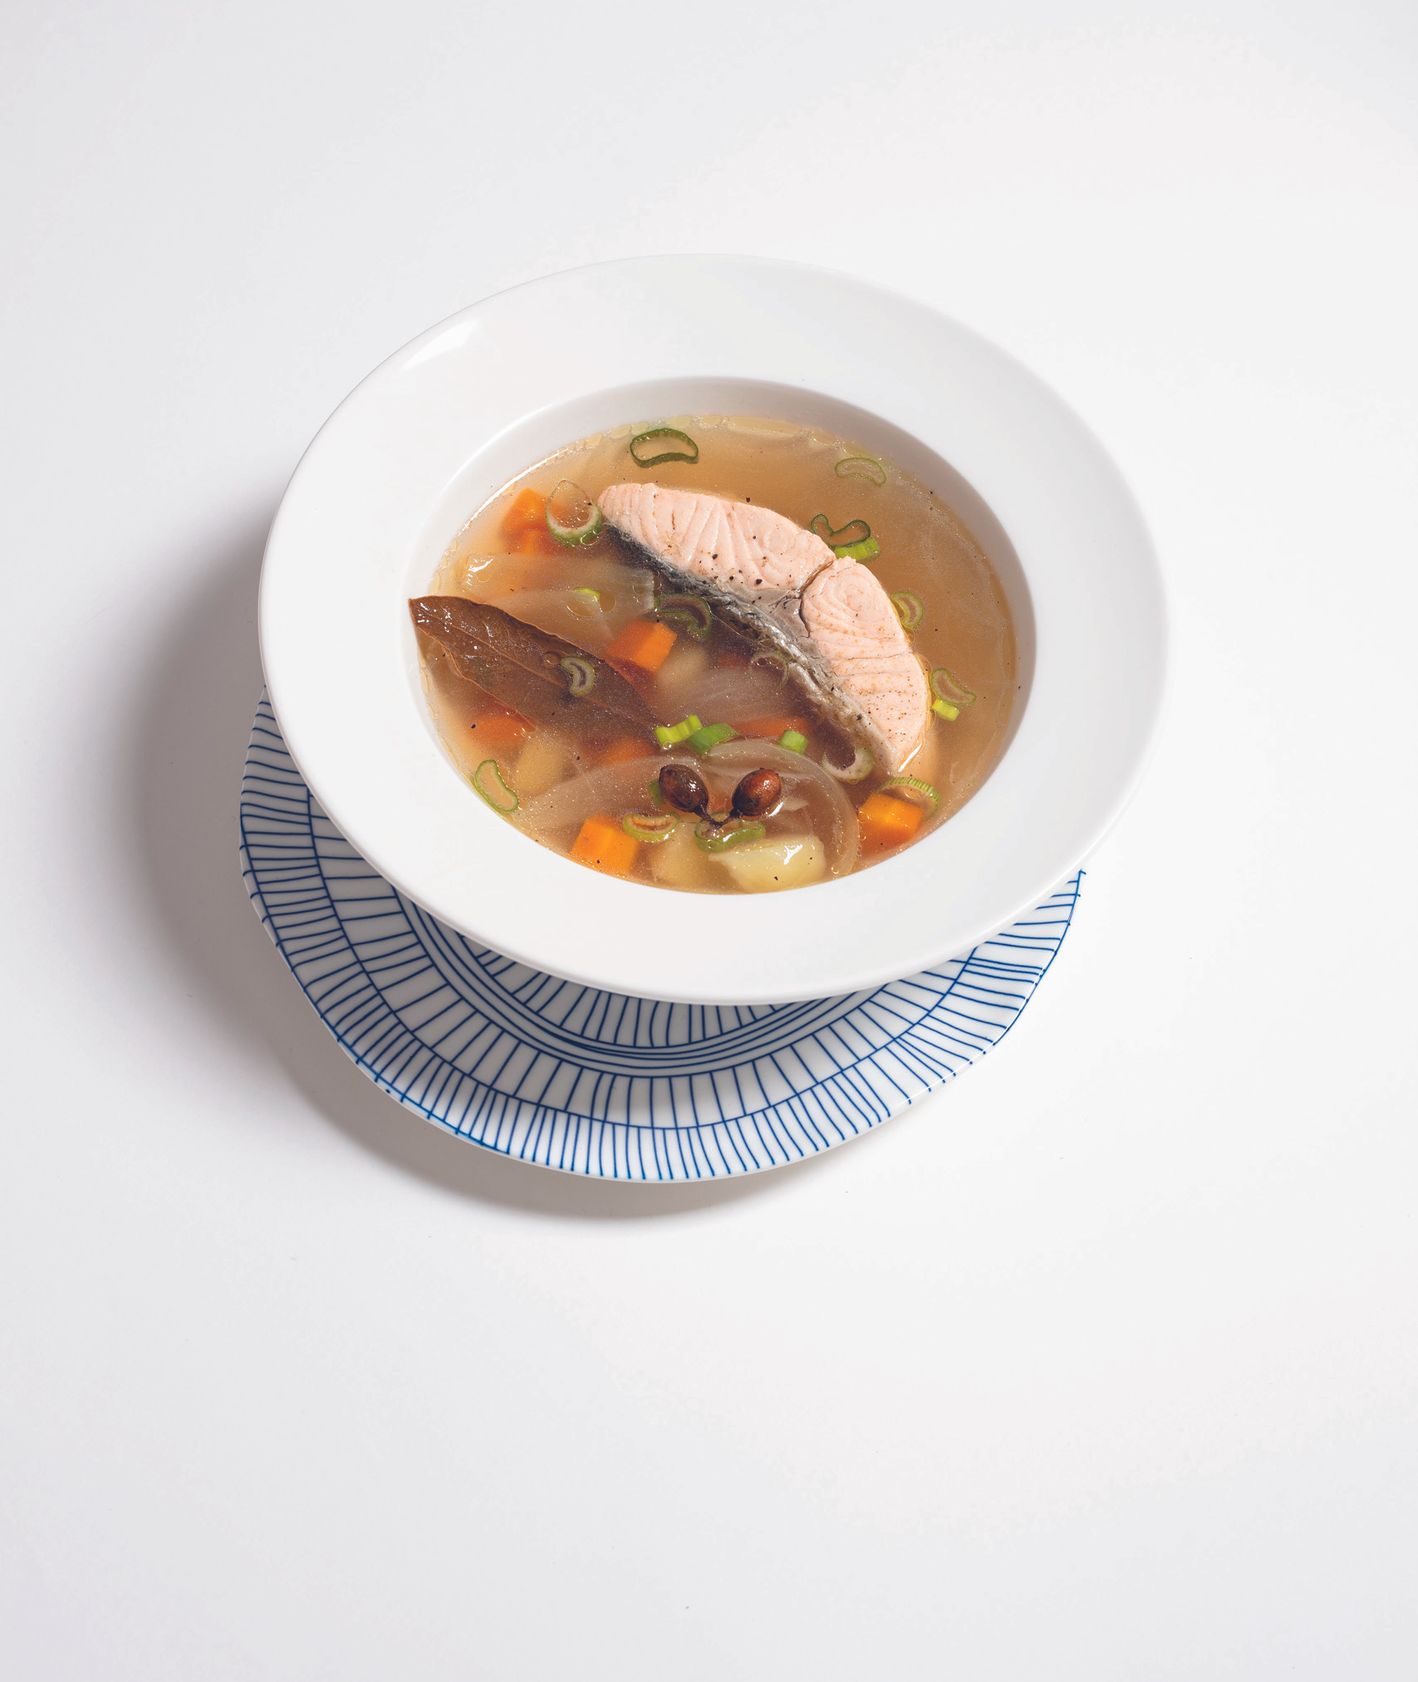 Przepis na uchę, tradycyjna kuchnia rosyjska, jak zrobić zupę rybną (fot. Jakub Stanek)